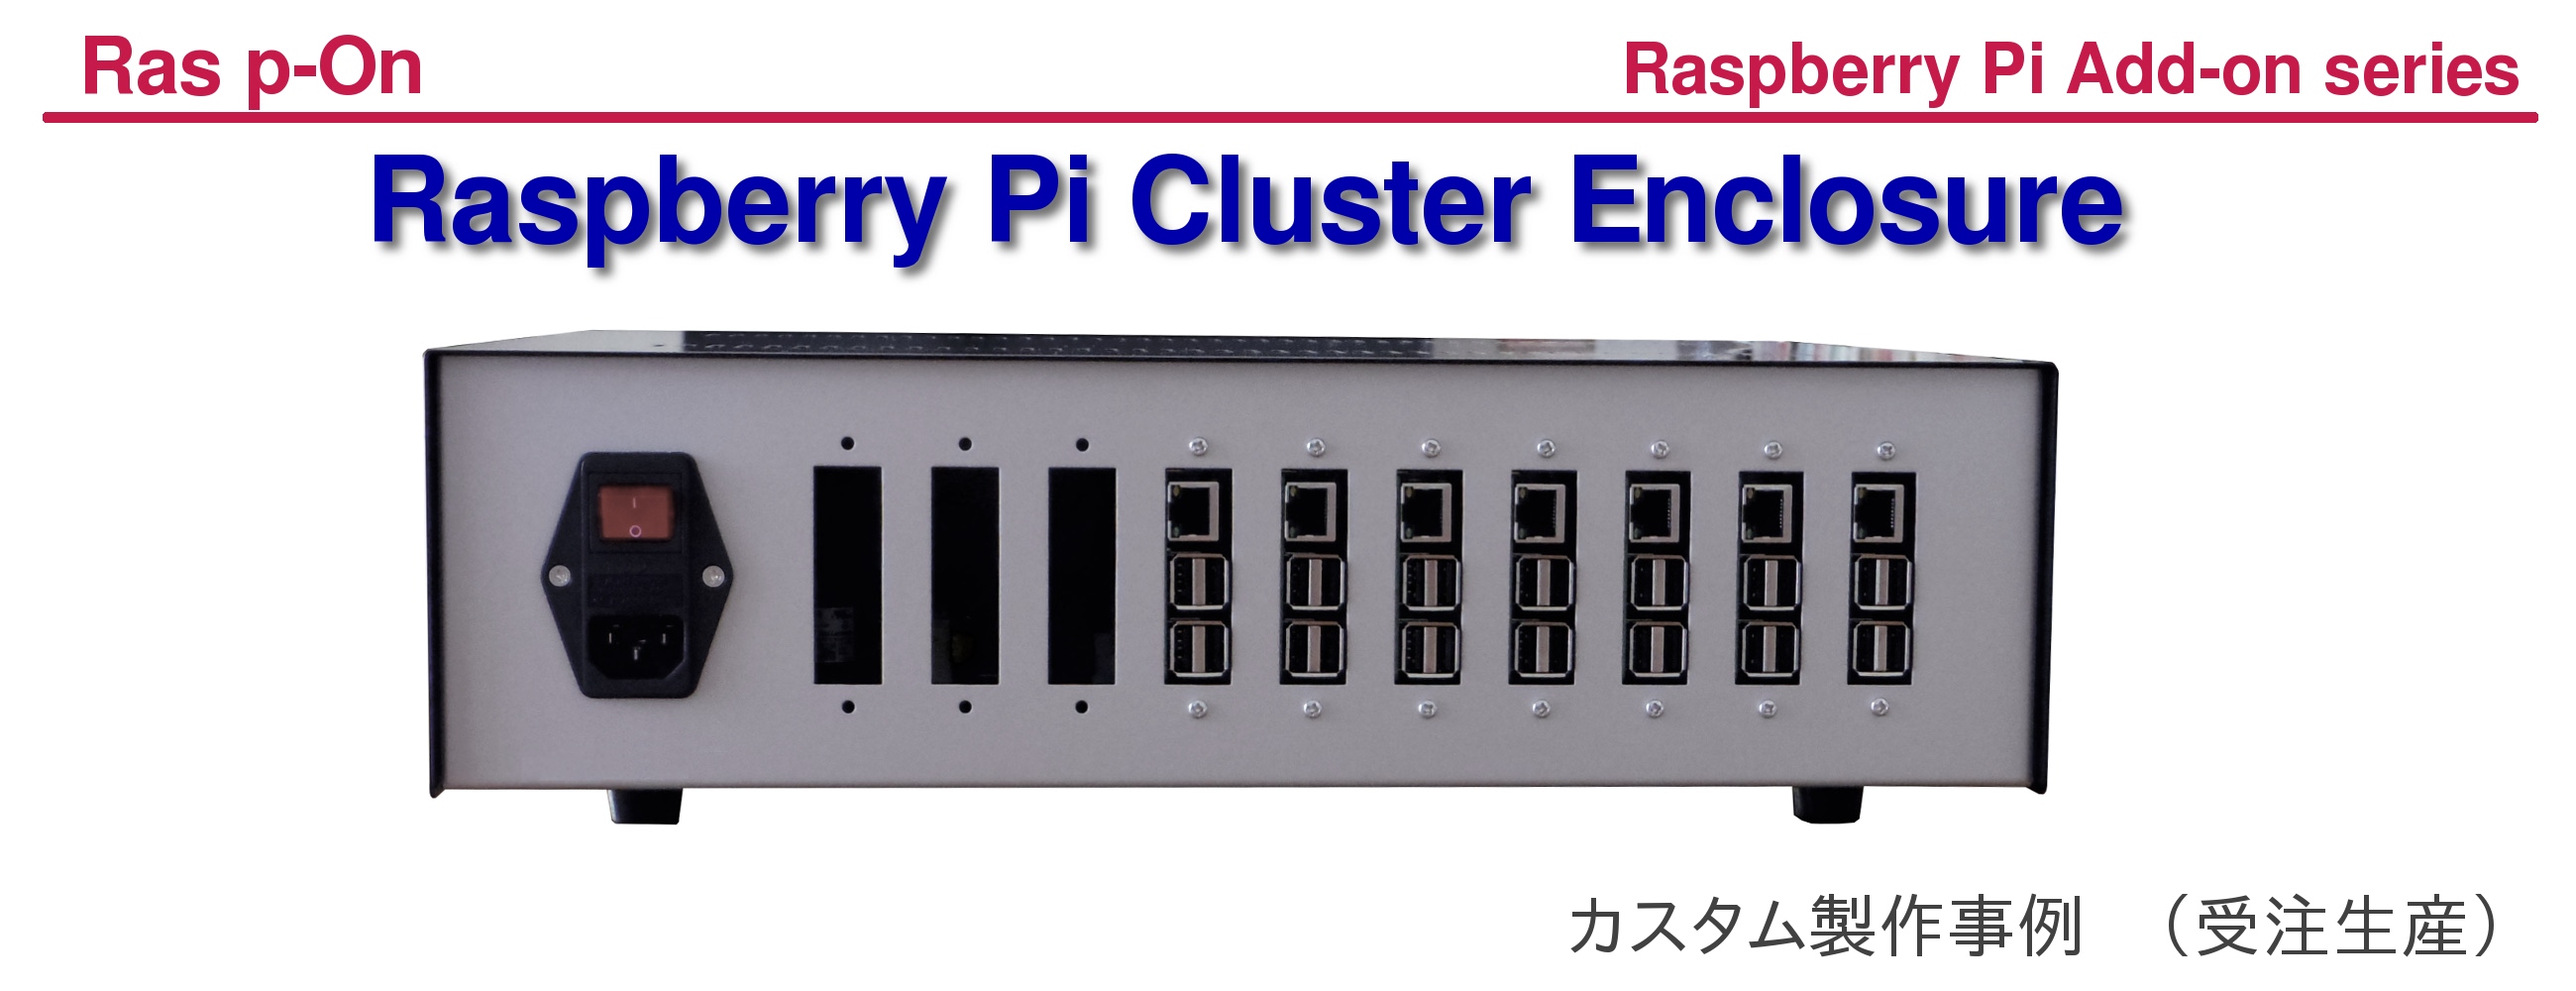 Raspberri Pi Cluster Enclosure